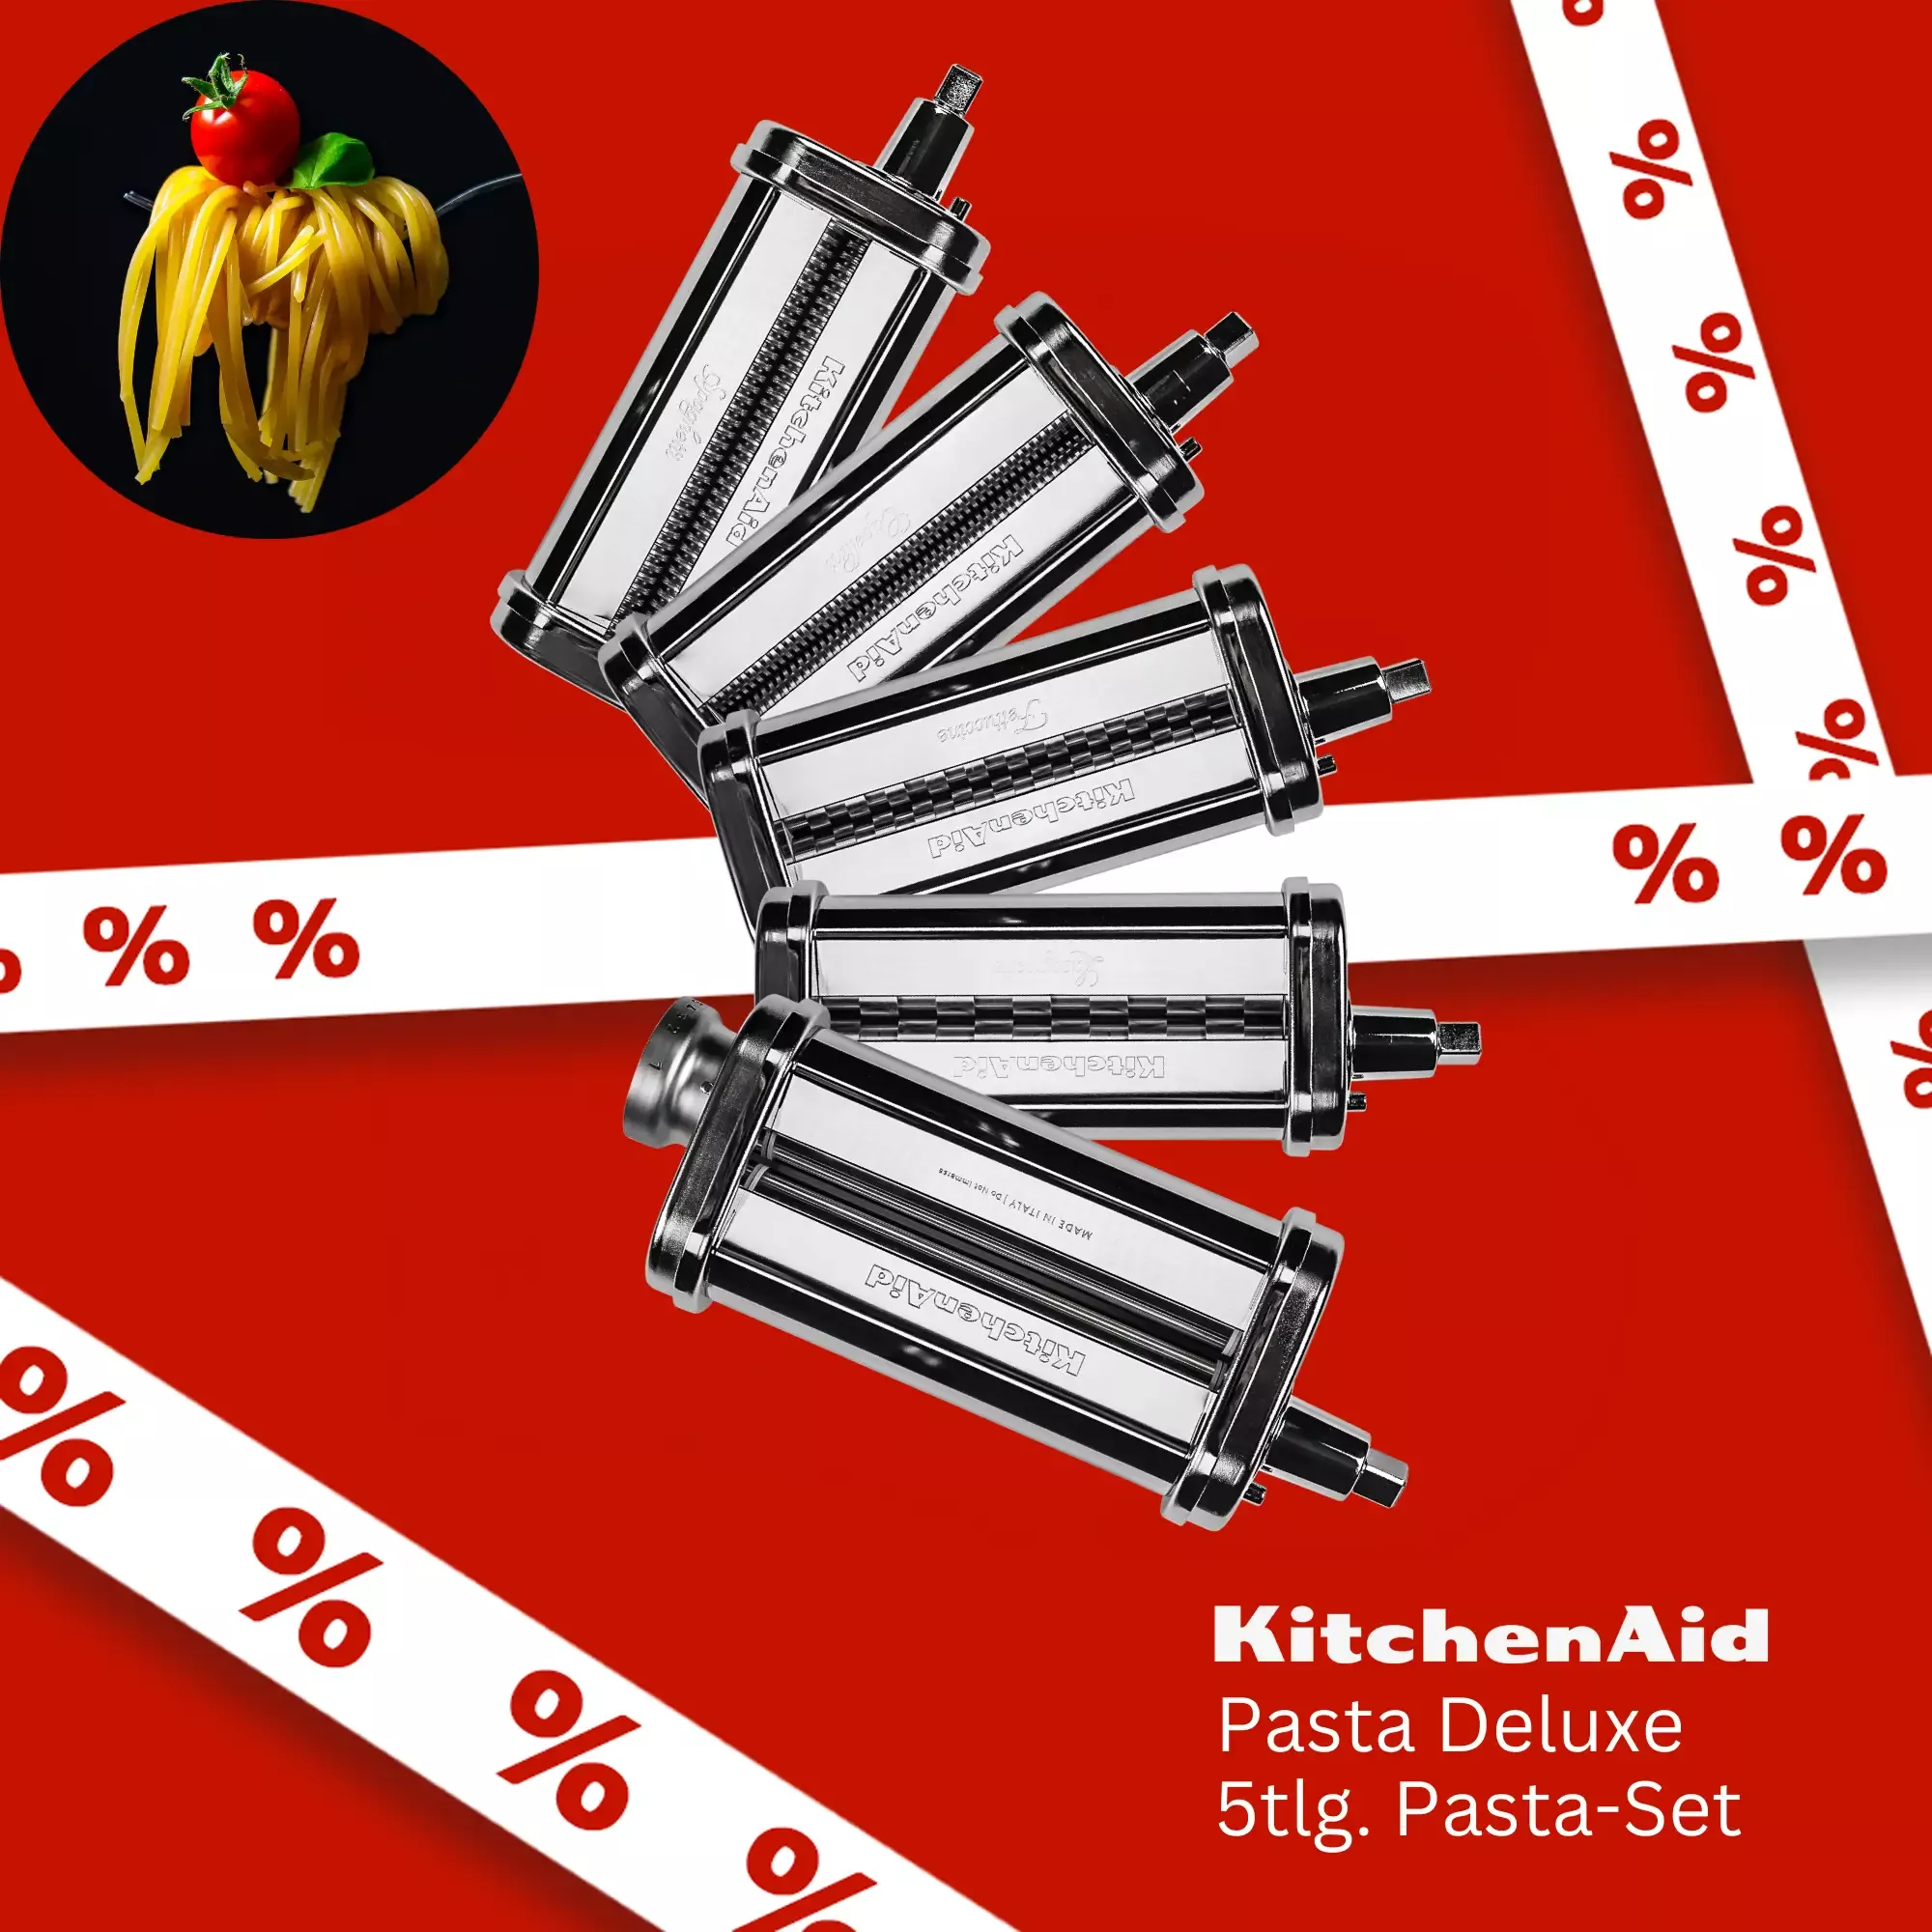 Pasta Deluxe KitchenAid